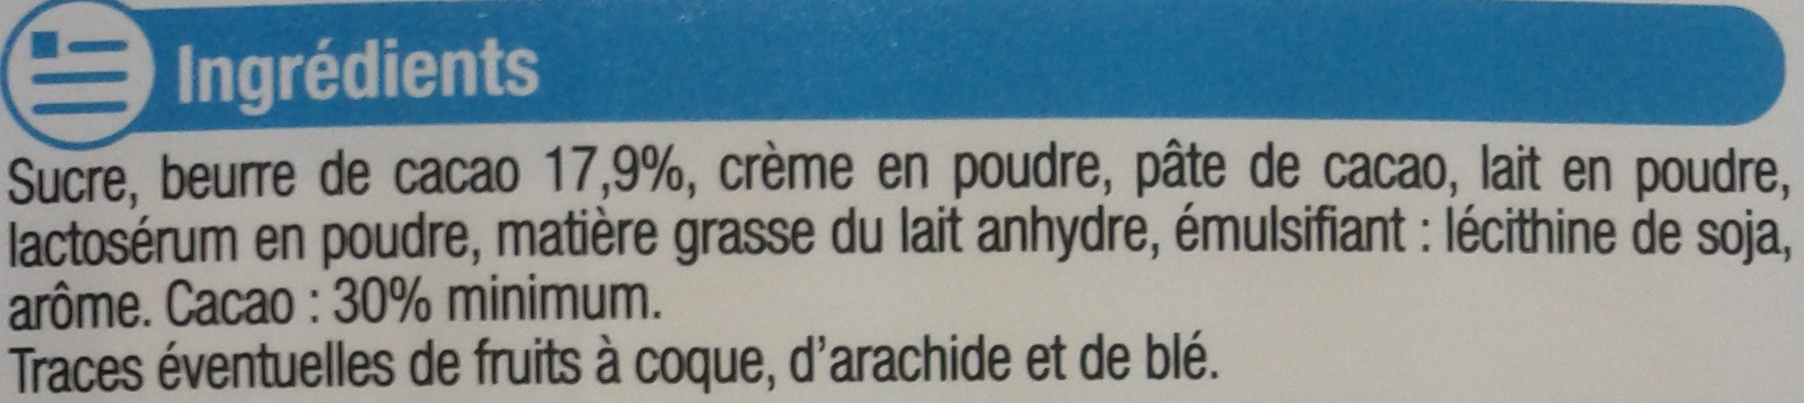 Chocolat lait pays alpin - Ingredients - fr